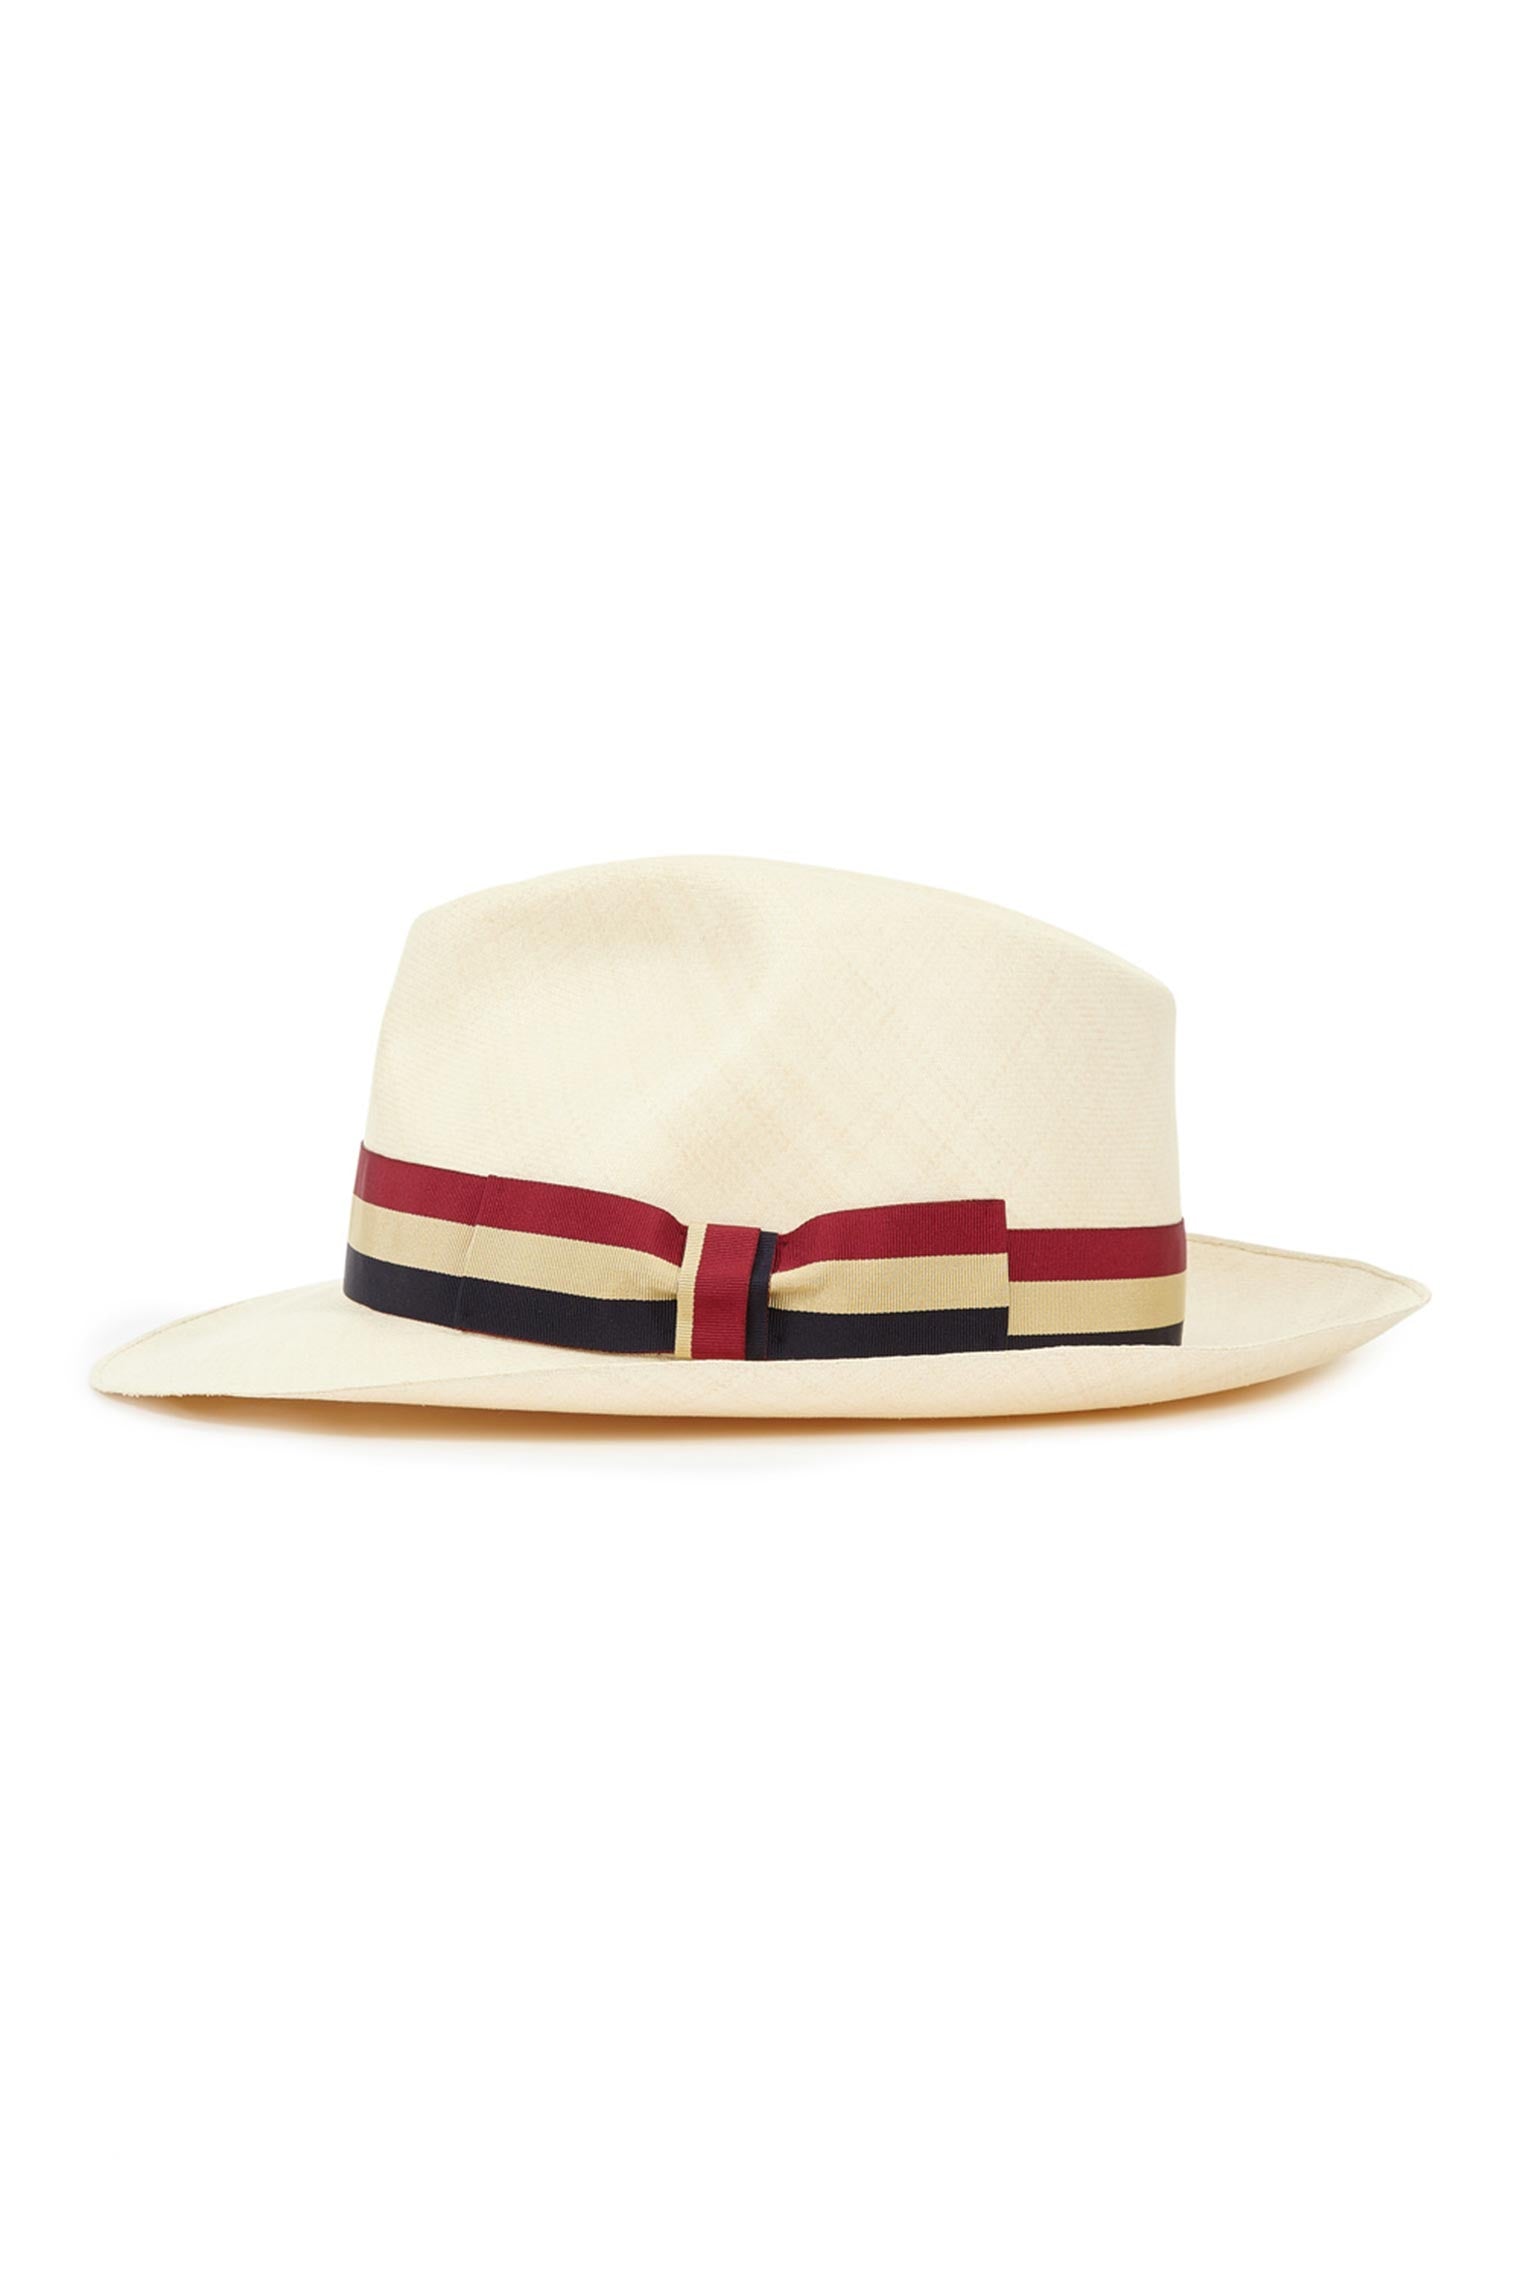 Bespoke Ultra-Fine Montecristi Panama - Men's Hats - Lock & Co. Hatters London UK